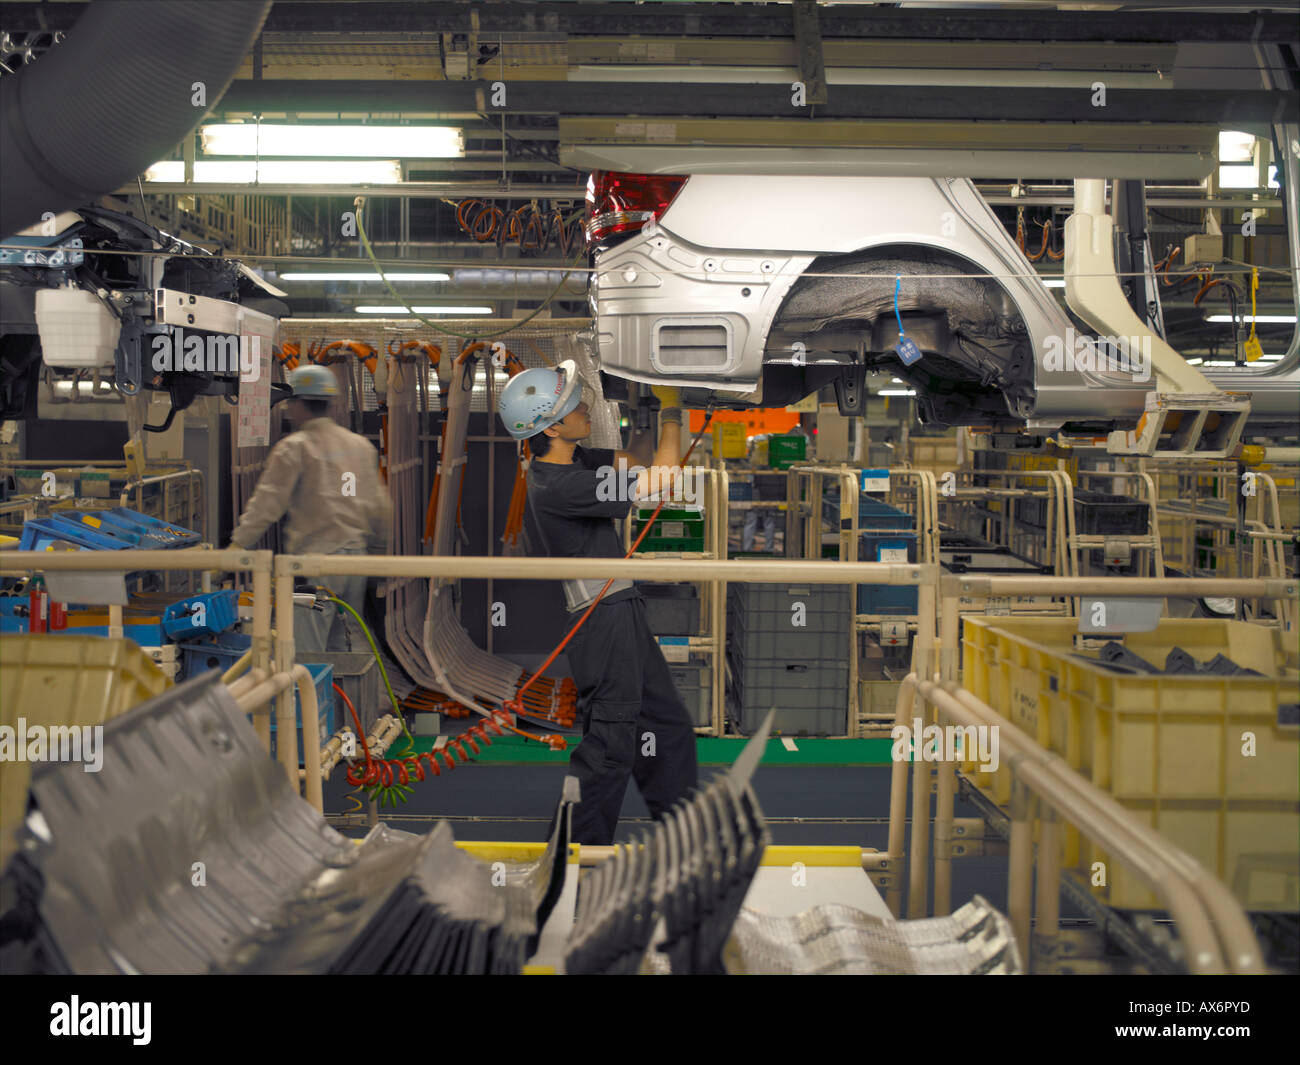 Les travailleurs de l'usine produisant les voitures hybrides Toyota Prius, travailler sur la chaîne de montage de la ville de Toyota Banque D'Images